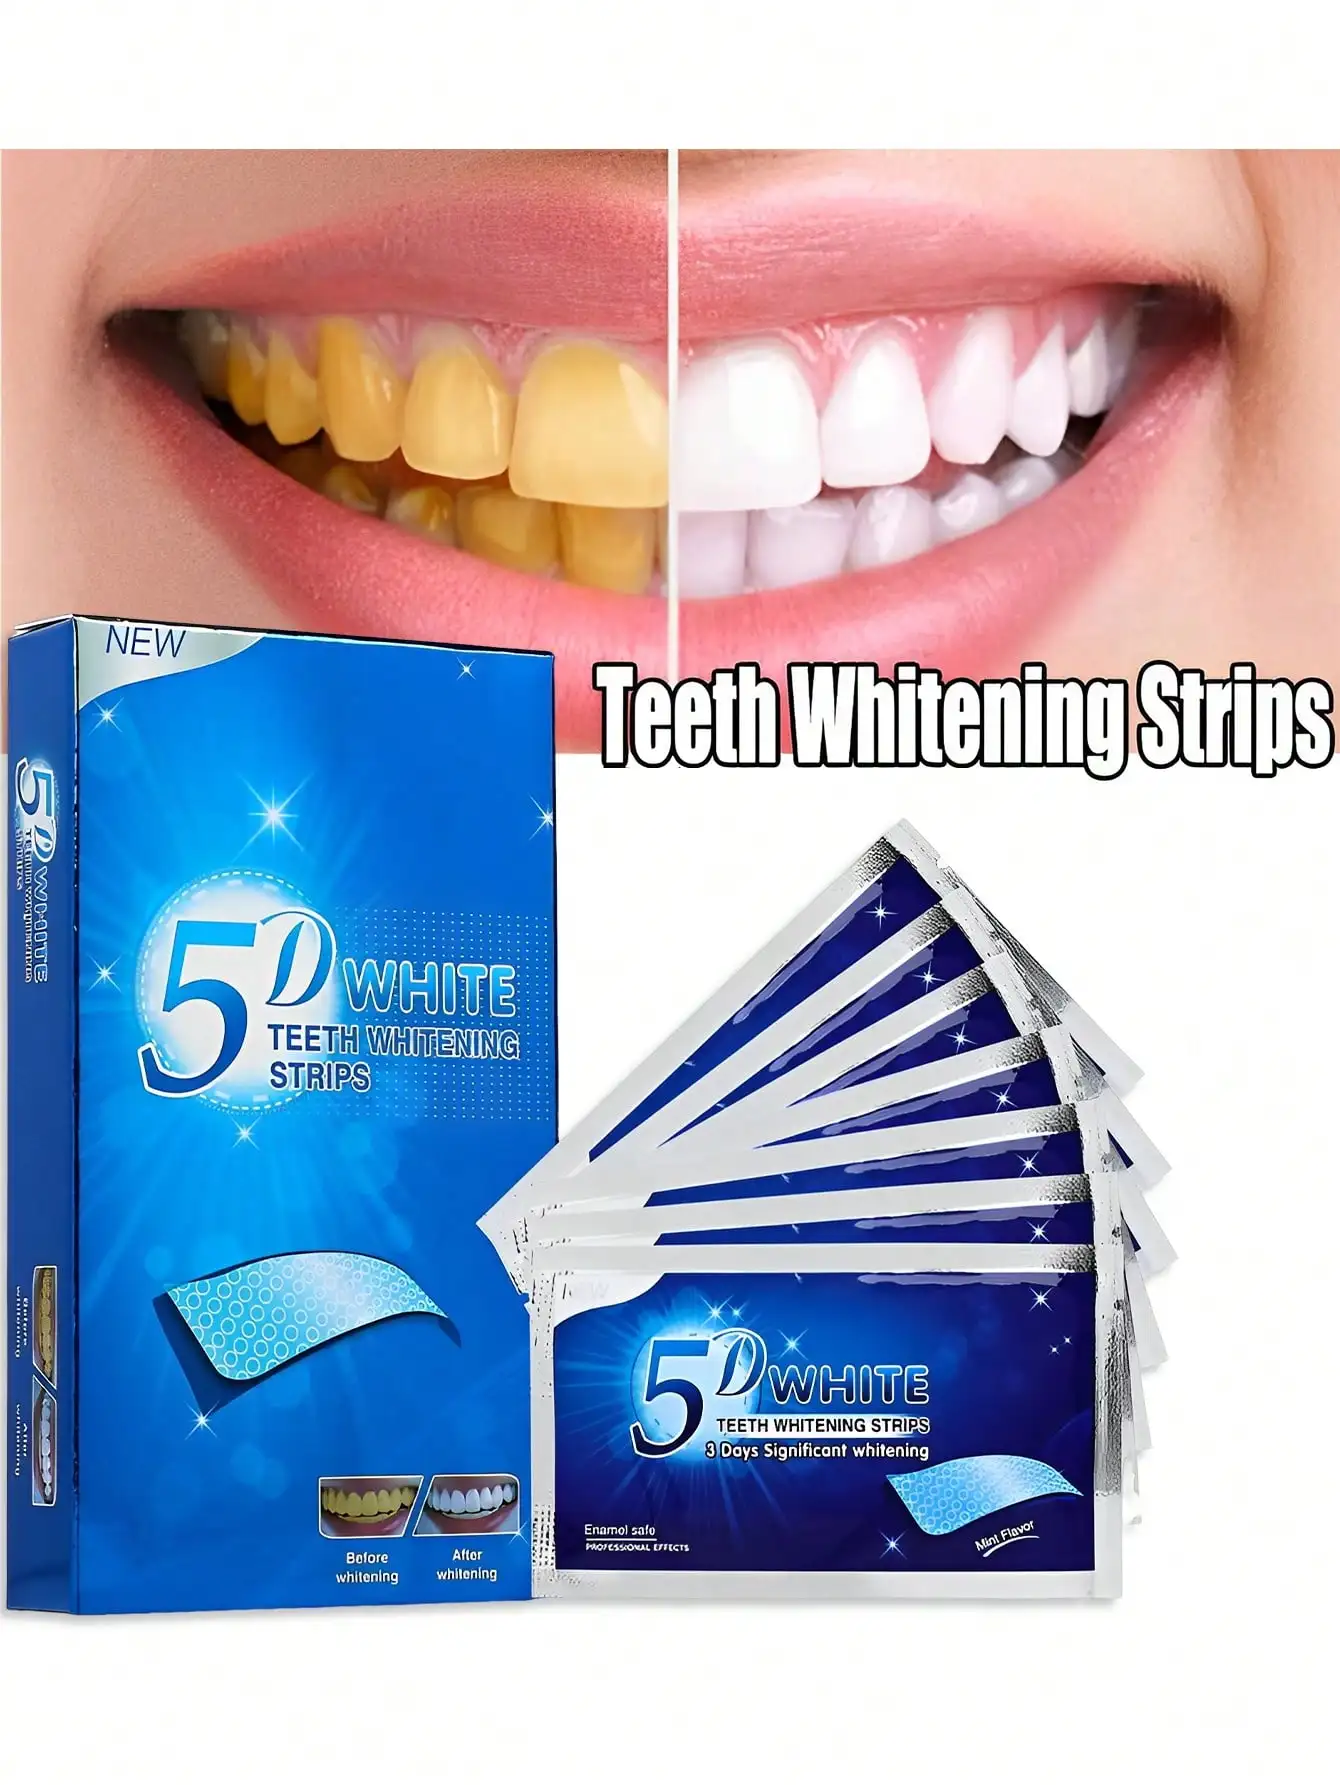 5D пластырь для отбеливания зубов для желтого удаления, отбеливания, чистки и чистки зубов: инструмент для отбеливания и осветления зубов